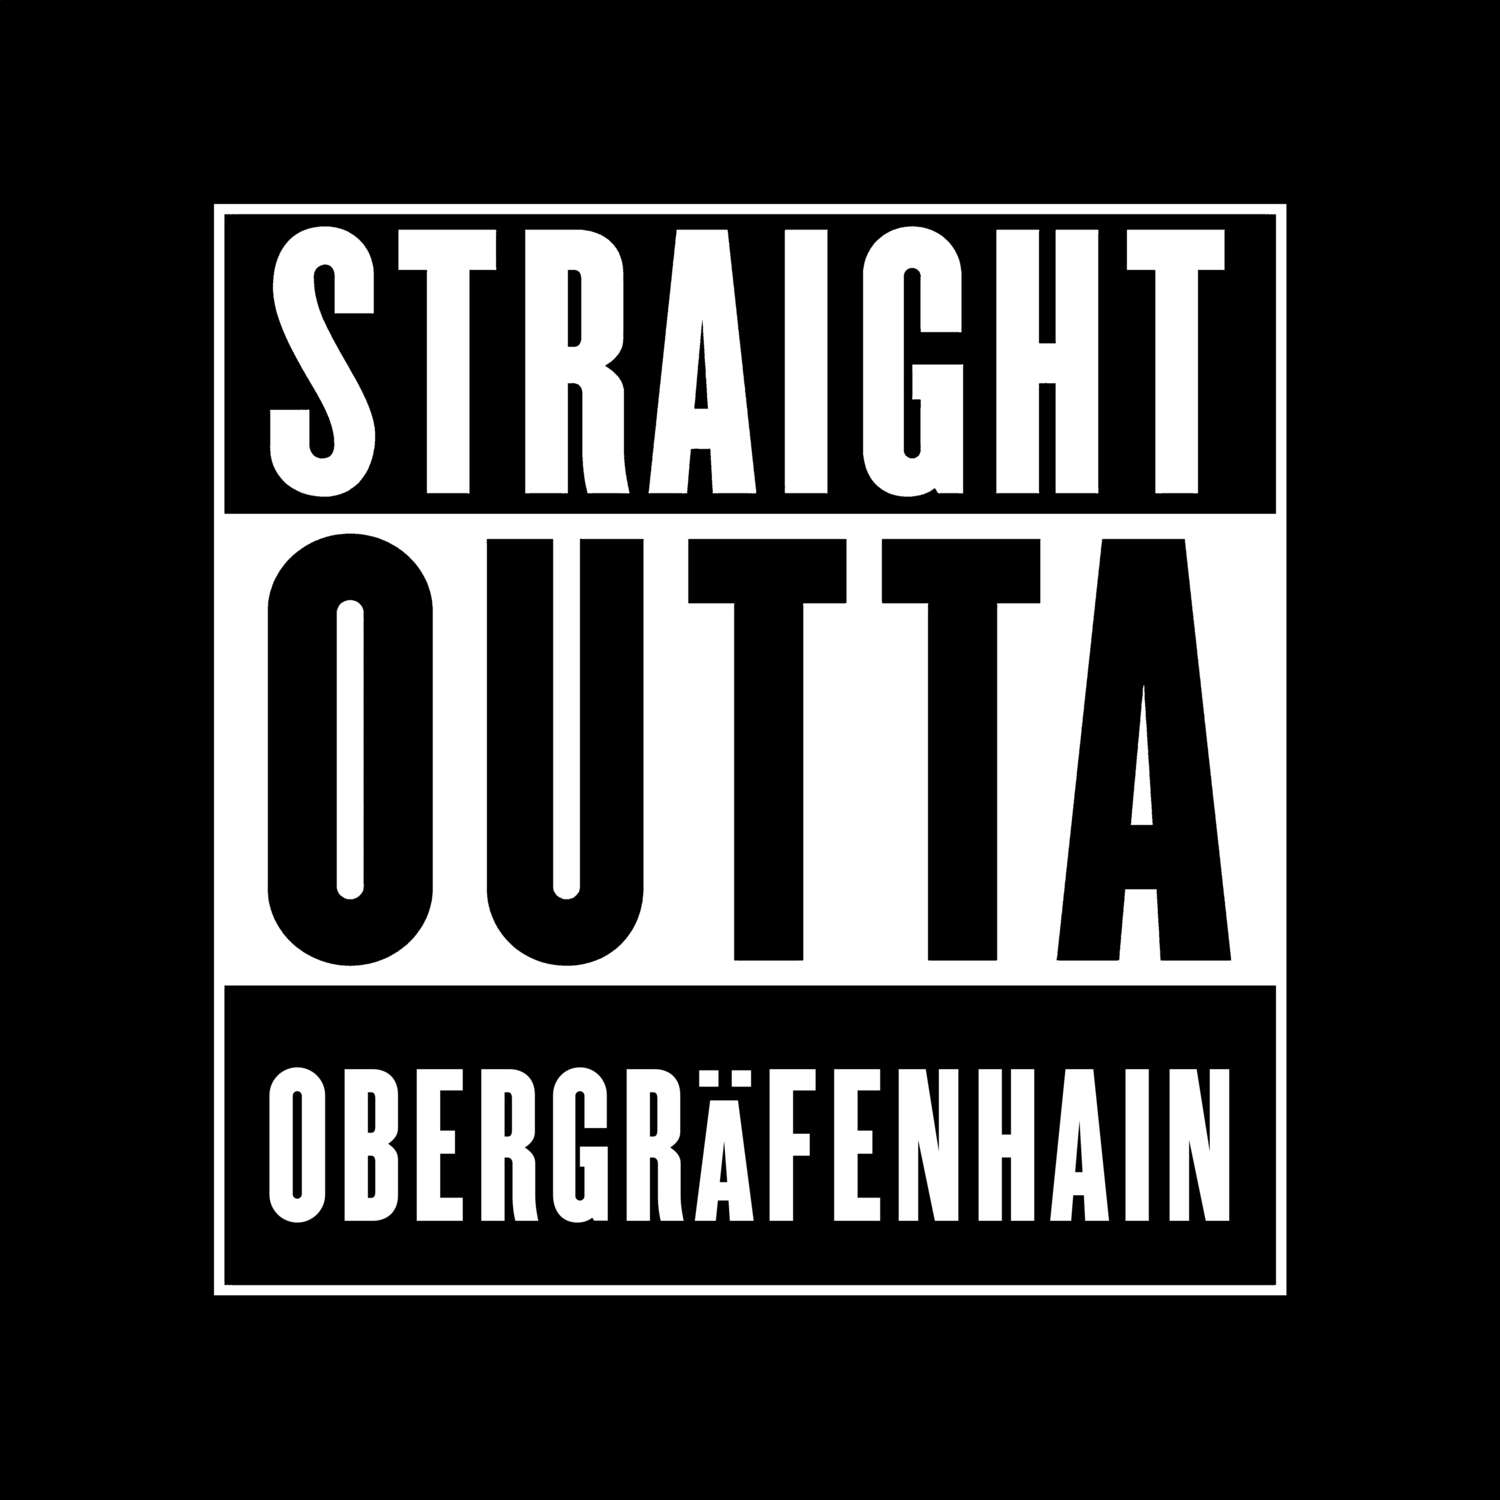 Obergräfenhain T-Shirt »Straight Outta«